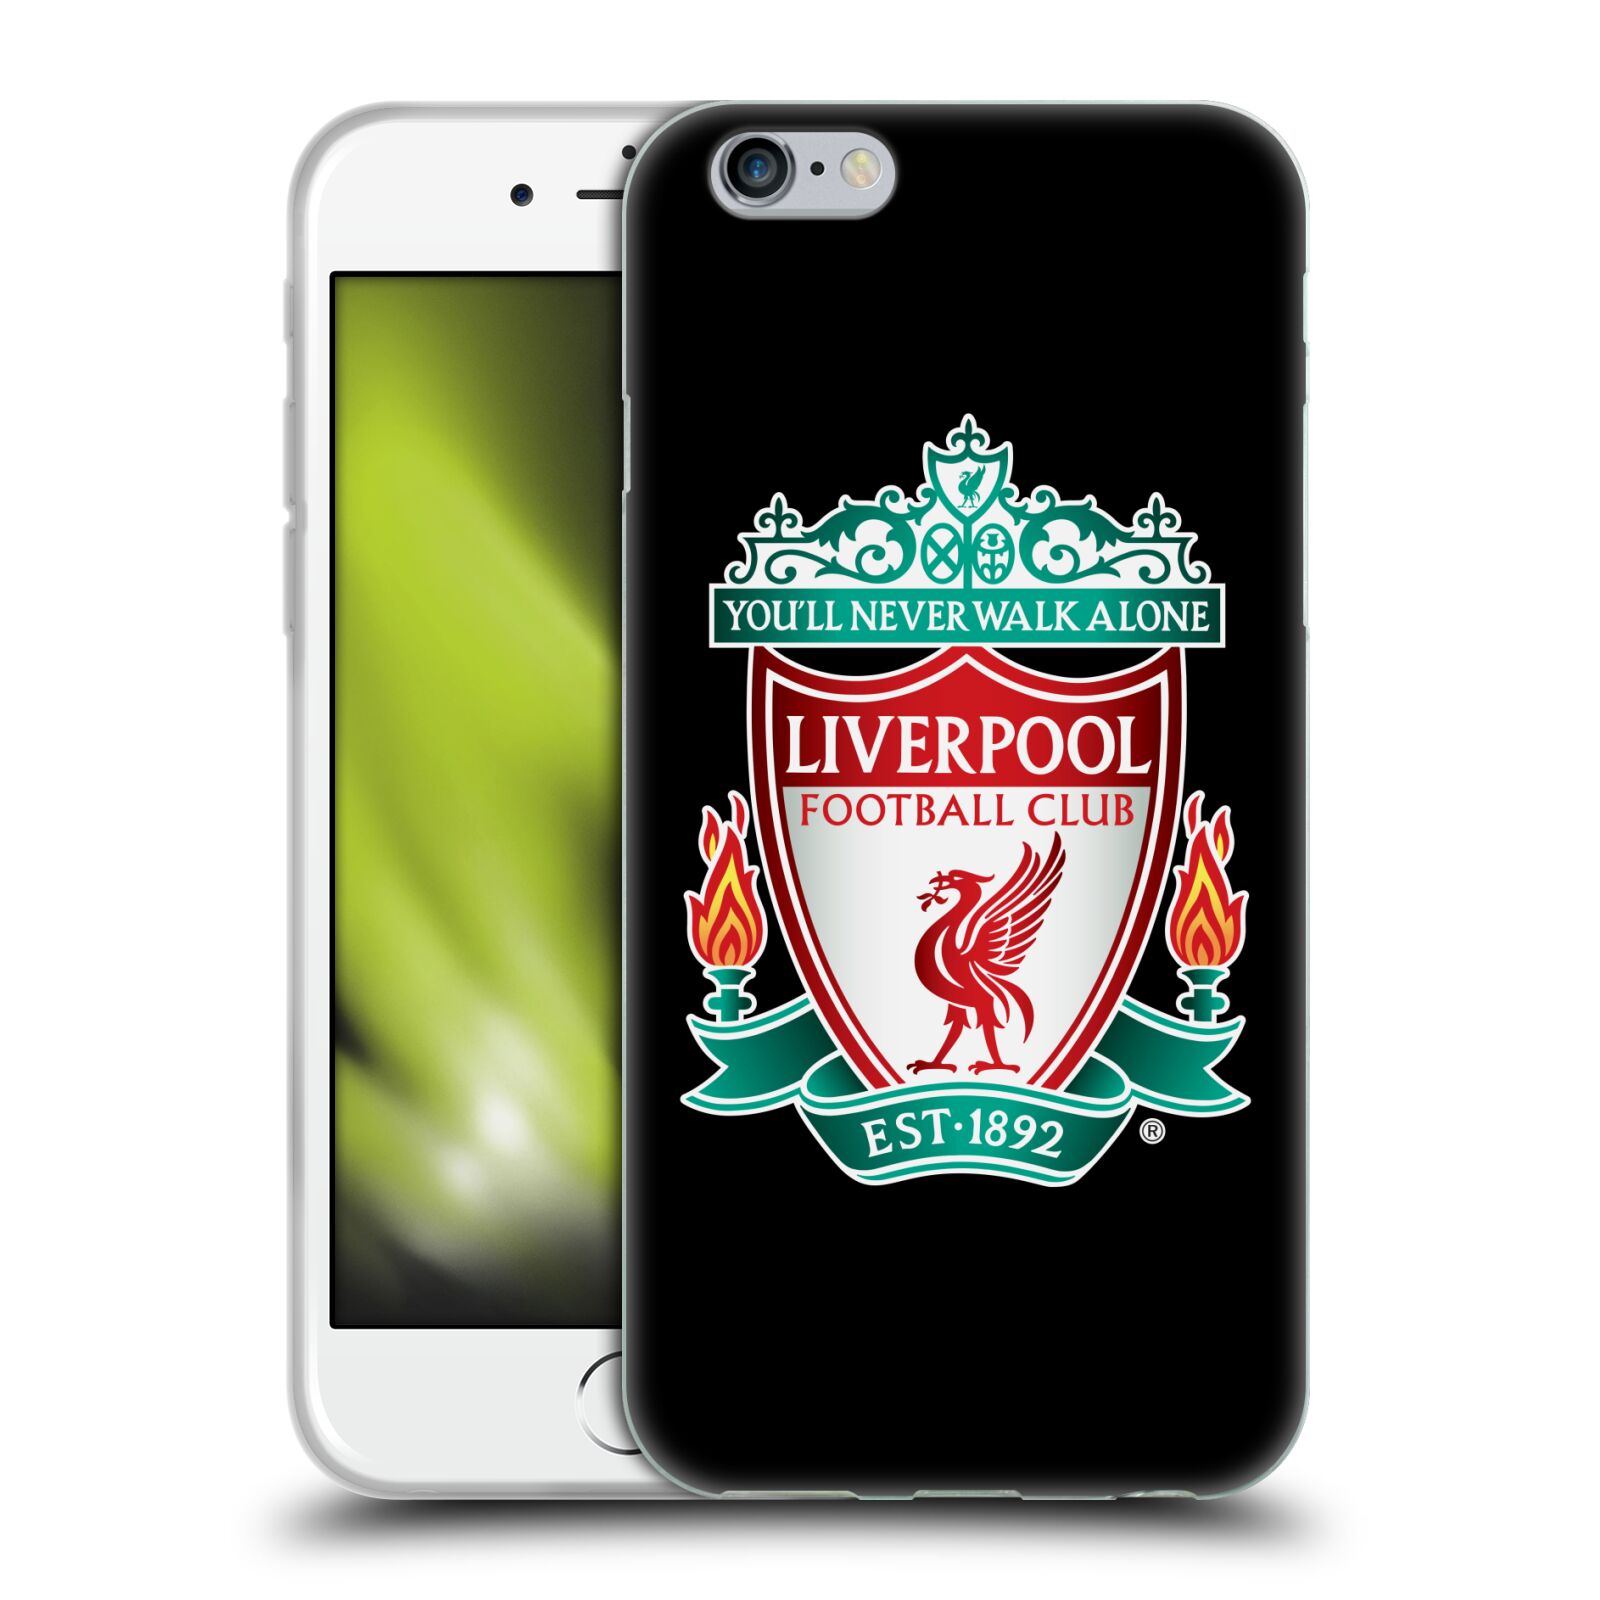 Silikonové pouzdro na mobil Apple iPhone 6 HEAD CASE ZNAK LIVERPOOL FC OFFICIAL BLACK (Silikonový kryt či obal na mobilní telefon Liverpool FC Official pro Apple iPhone 6)